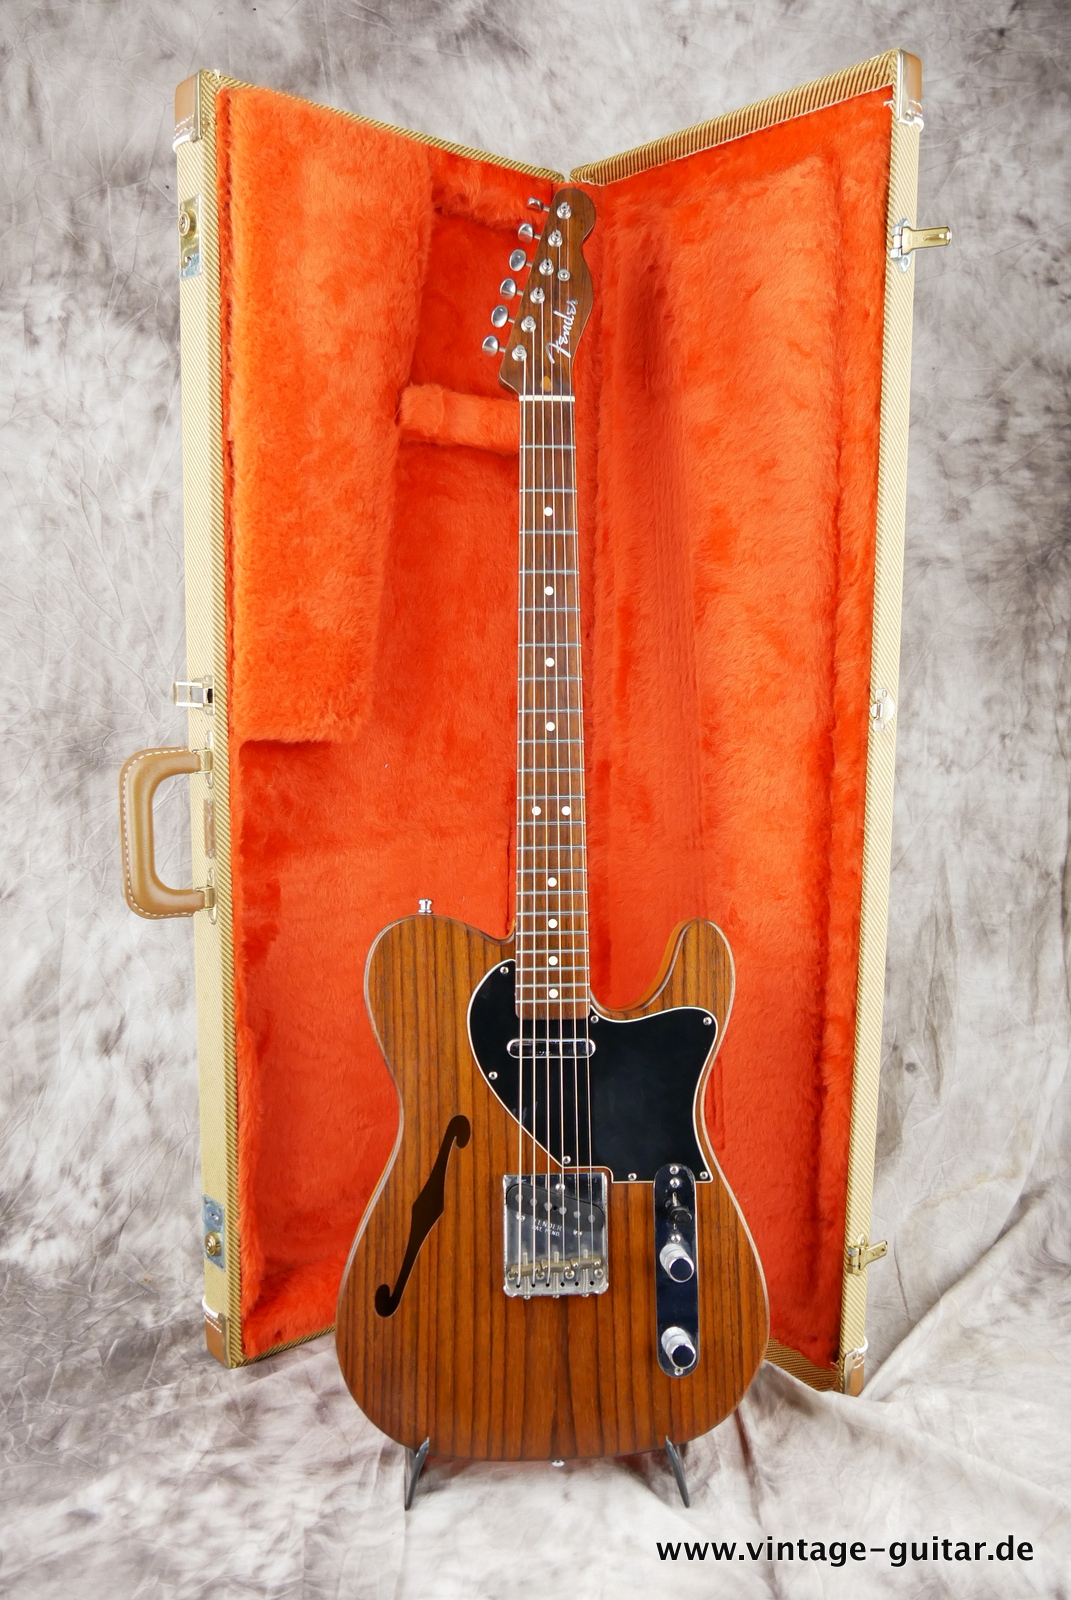 Fender_Telecaster_Thinline_Custom_shop_rosewood_1994_3,10kg_of25_tweed_case-017.JPG